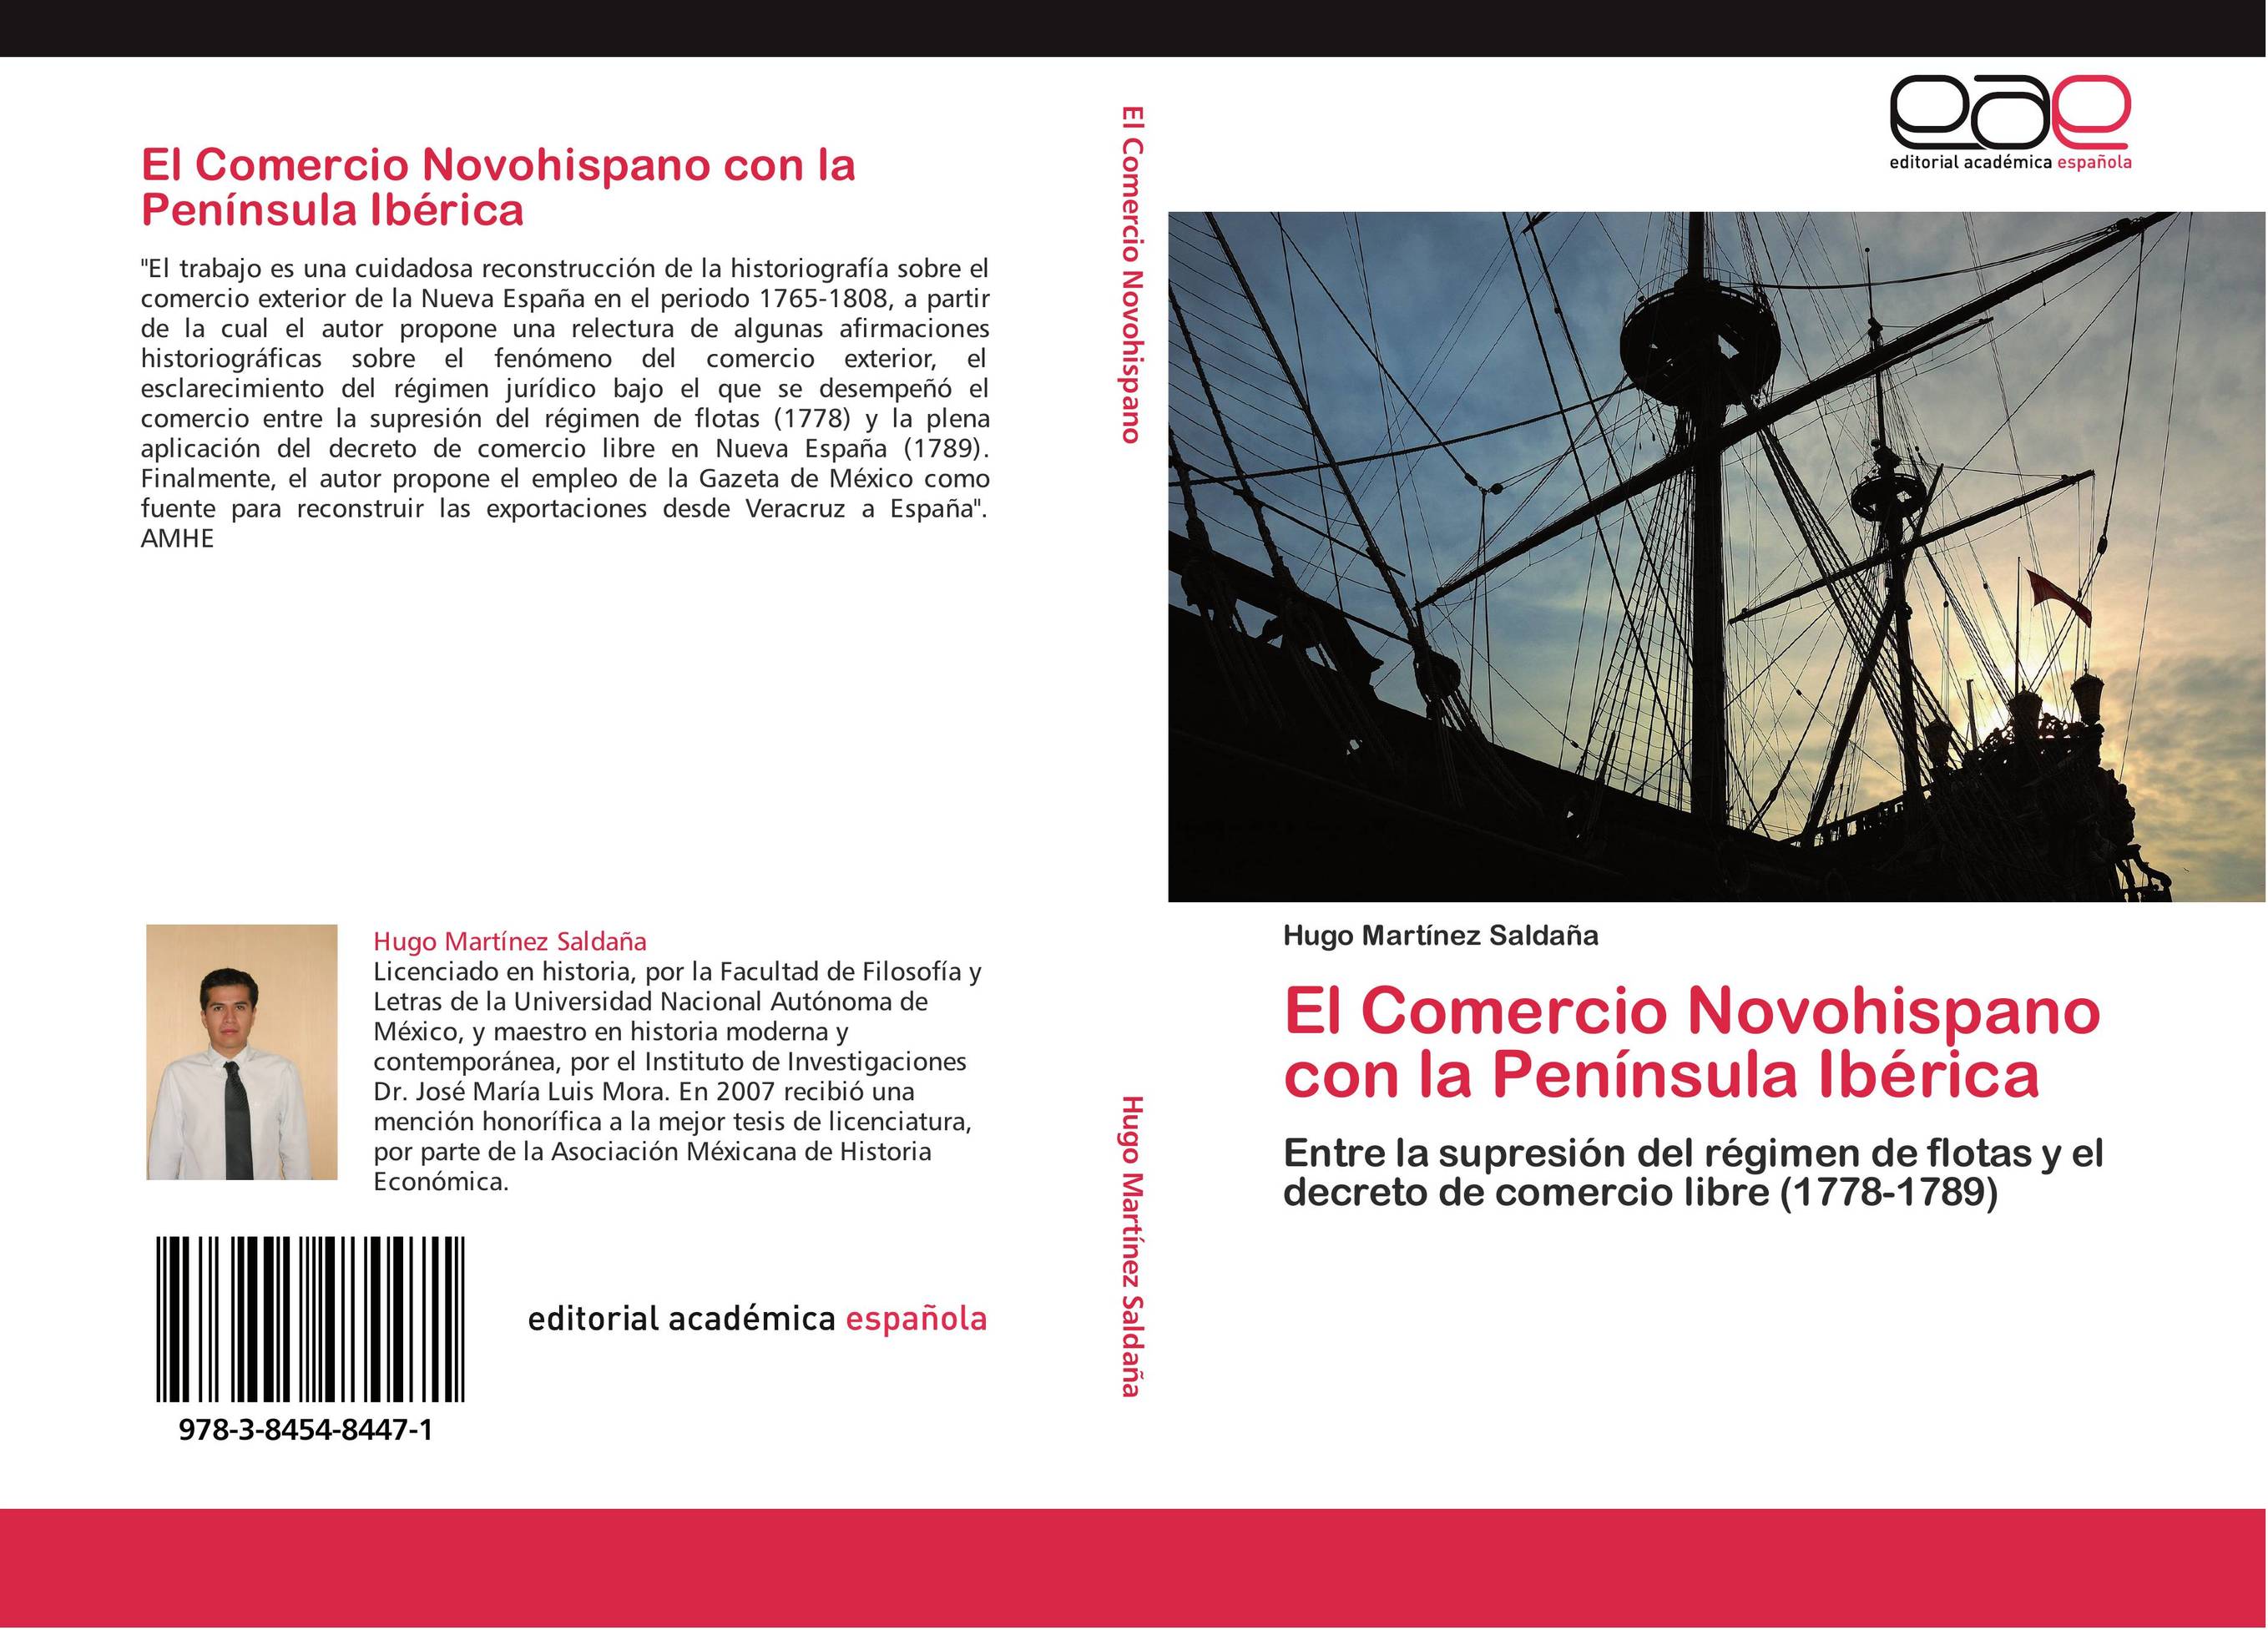 El Comercio Novohispano con la Península Ibérica